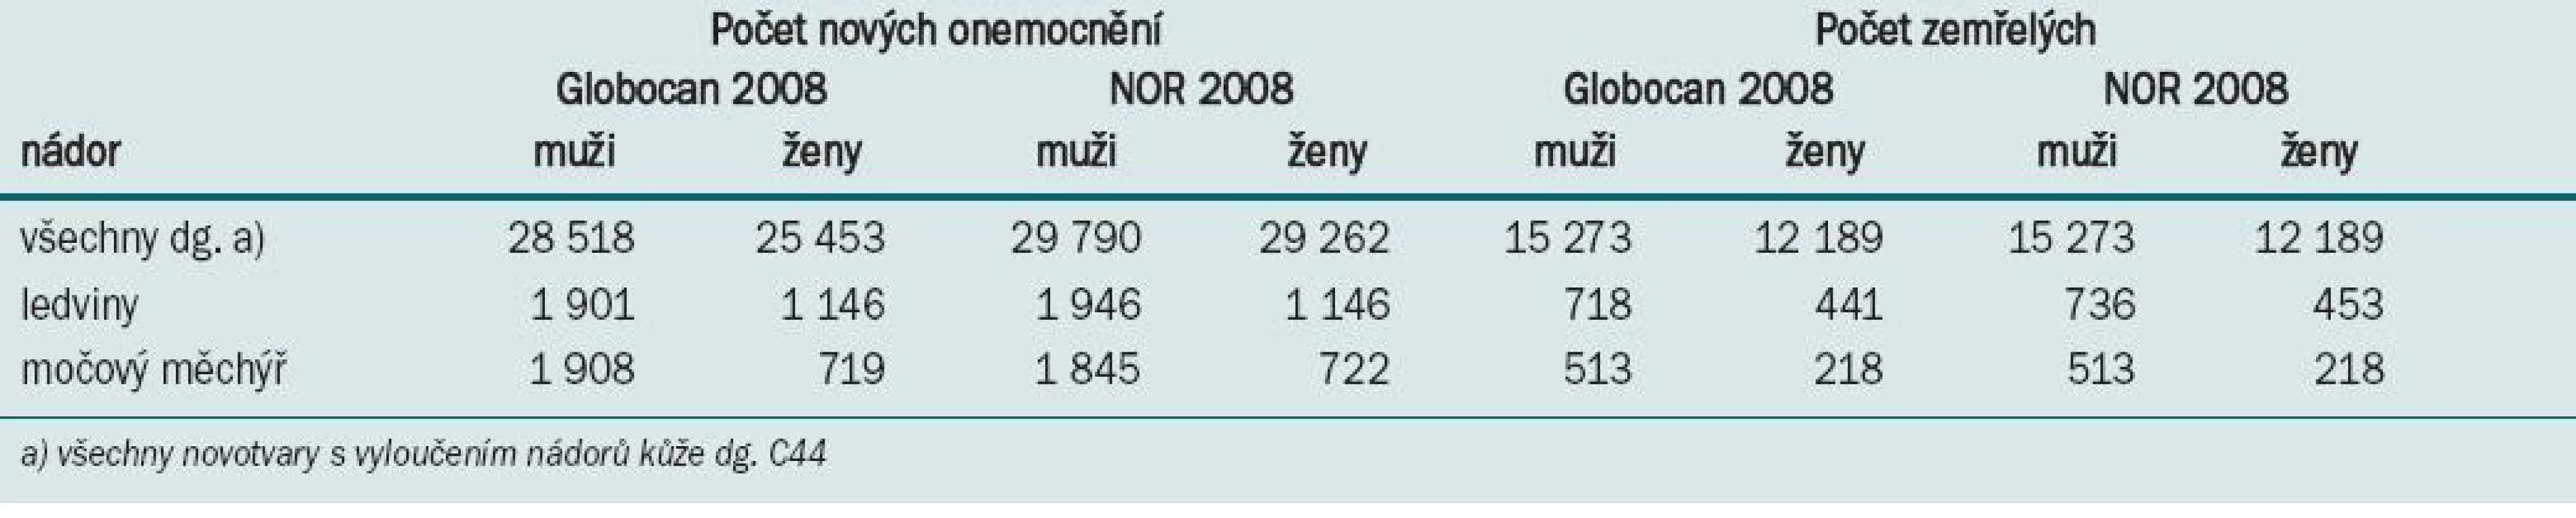 Porovnání údajů za ČR v roce 2008 z dat IARC a ÚZIS ČR.